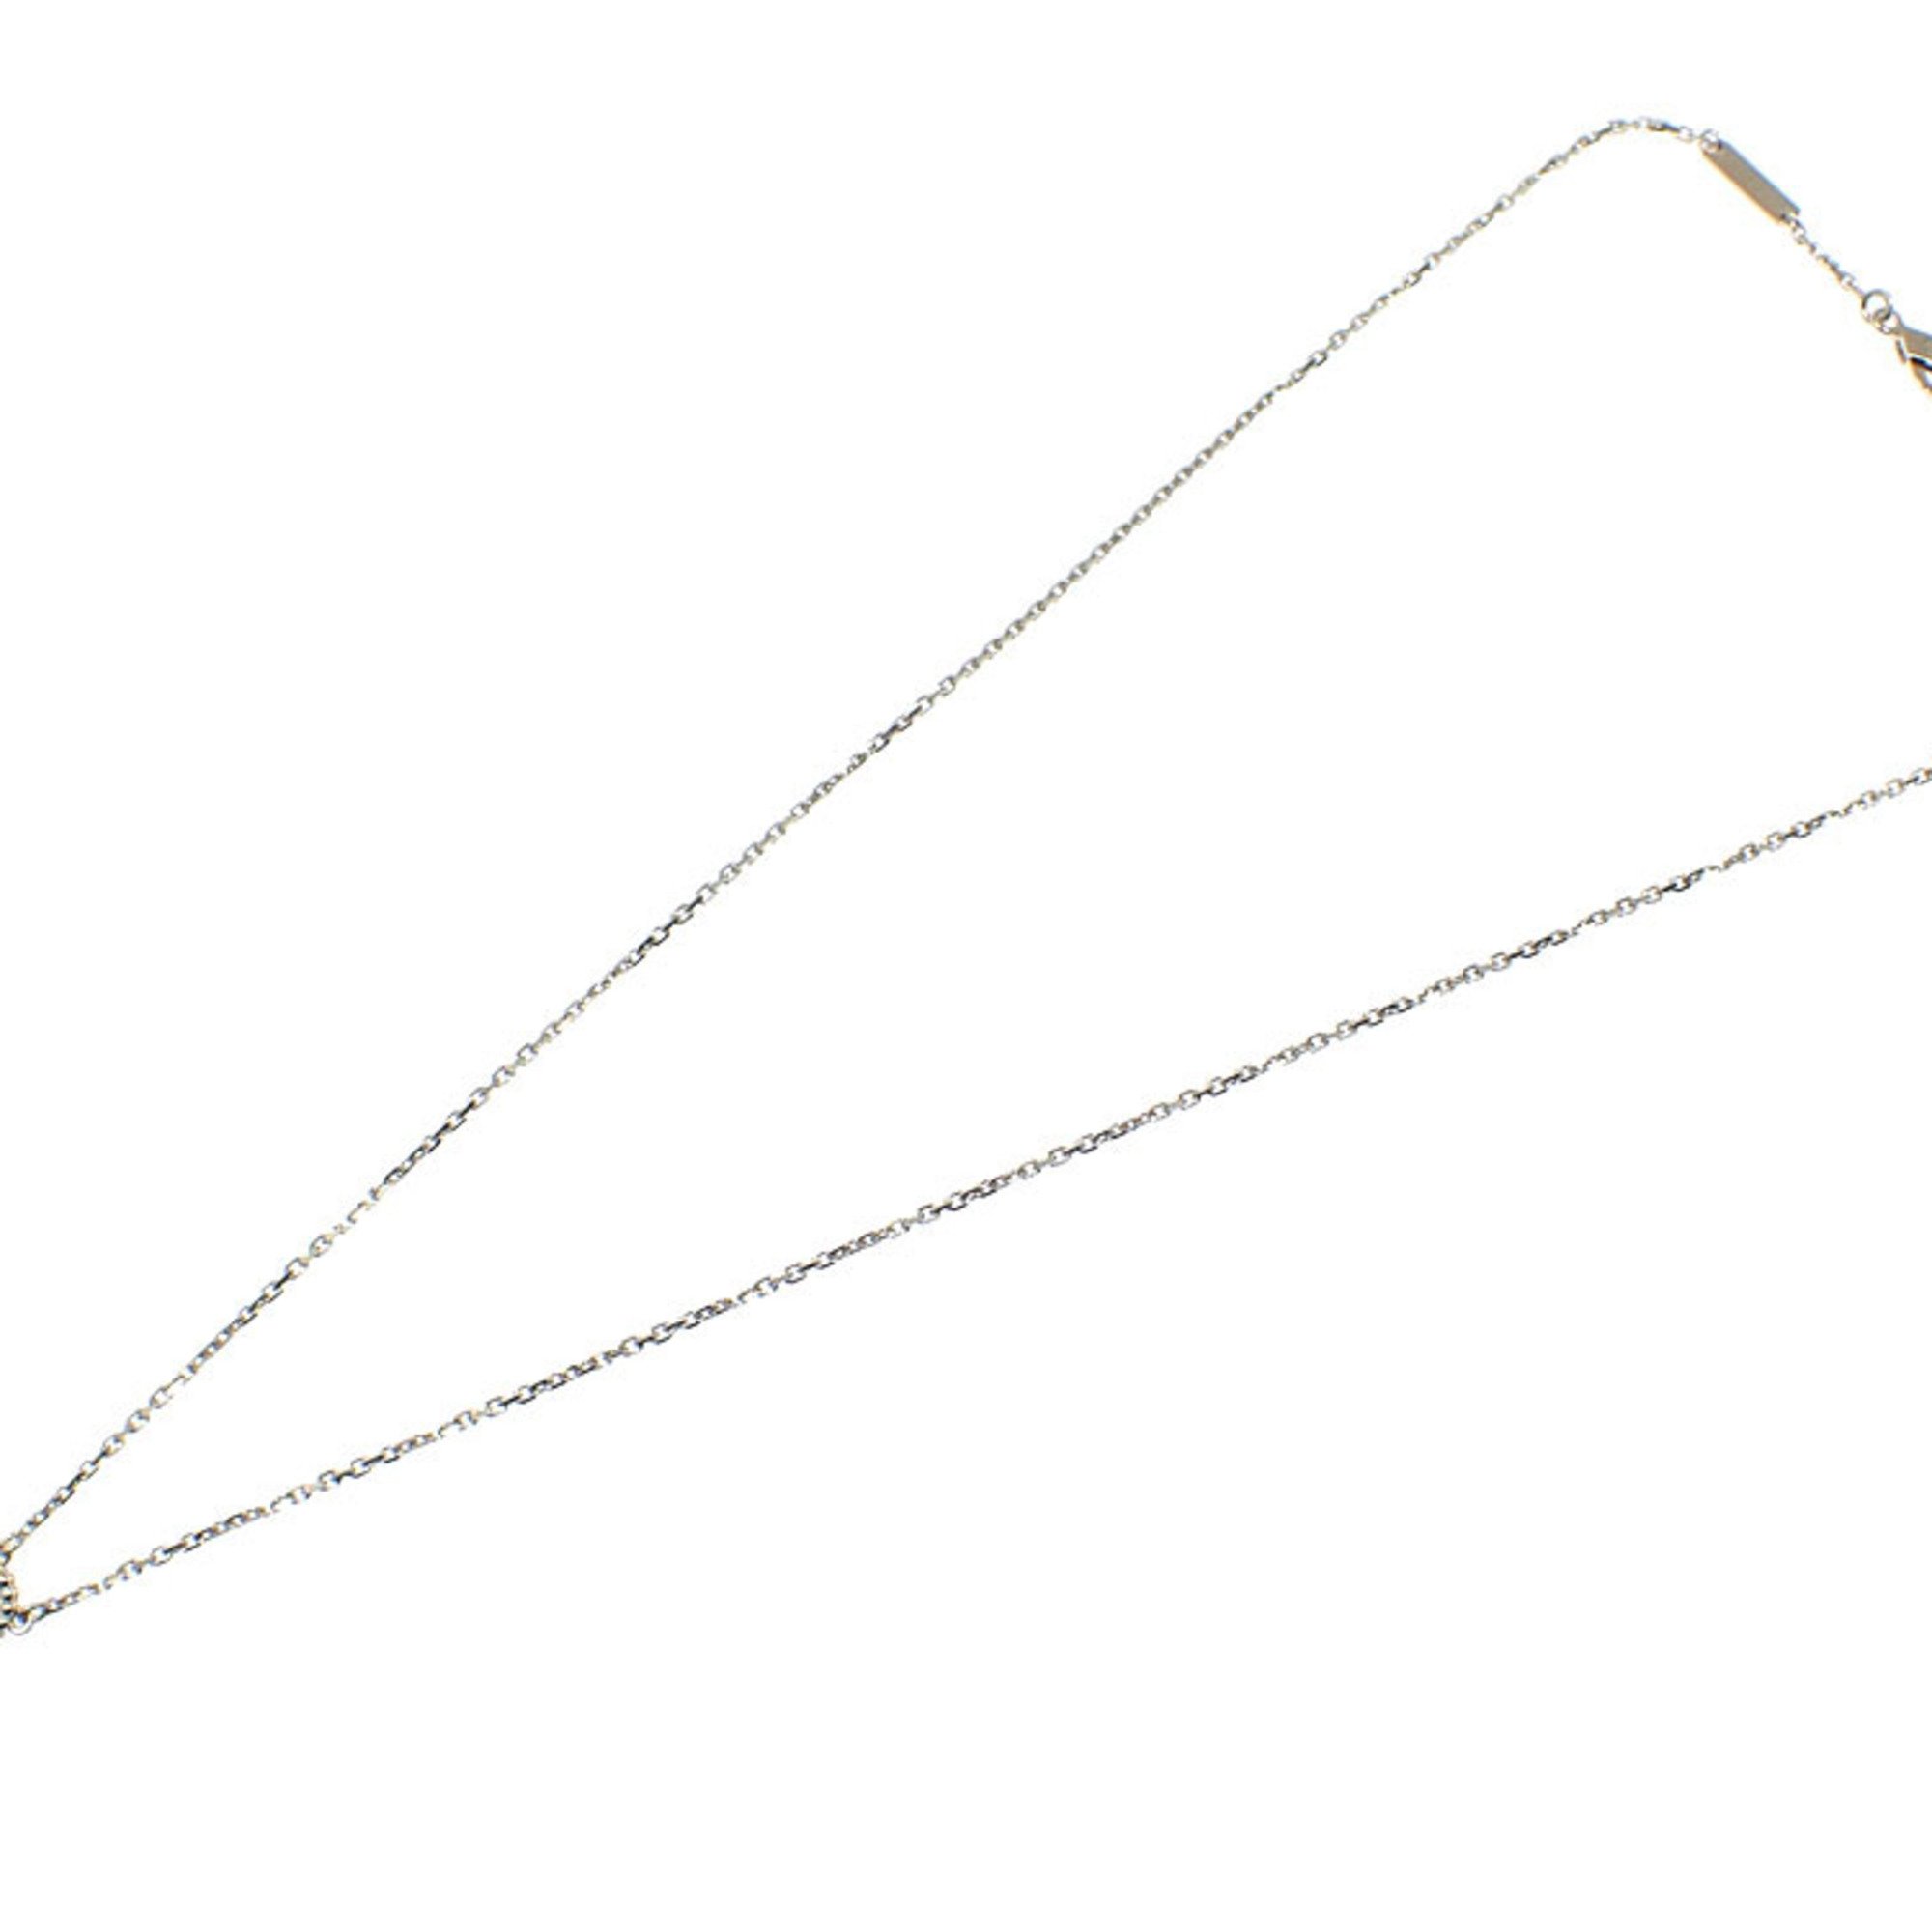 Van Cleef & Arpels Alhambra Necklace for Women, K18WG, Diamond, 5.7g, VCAR6100, White Gold 750, 18K VCA